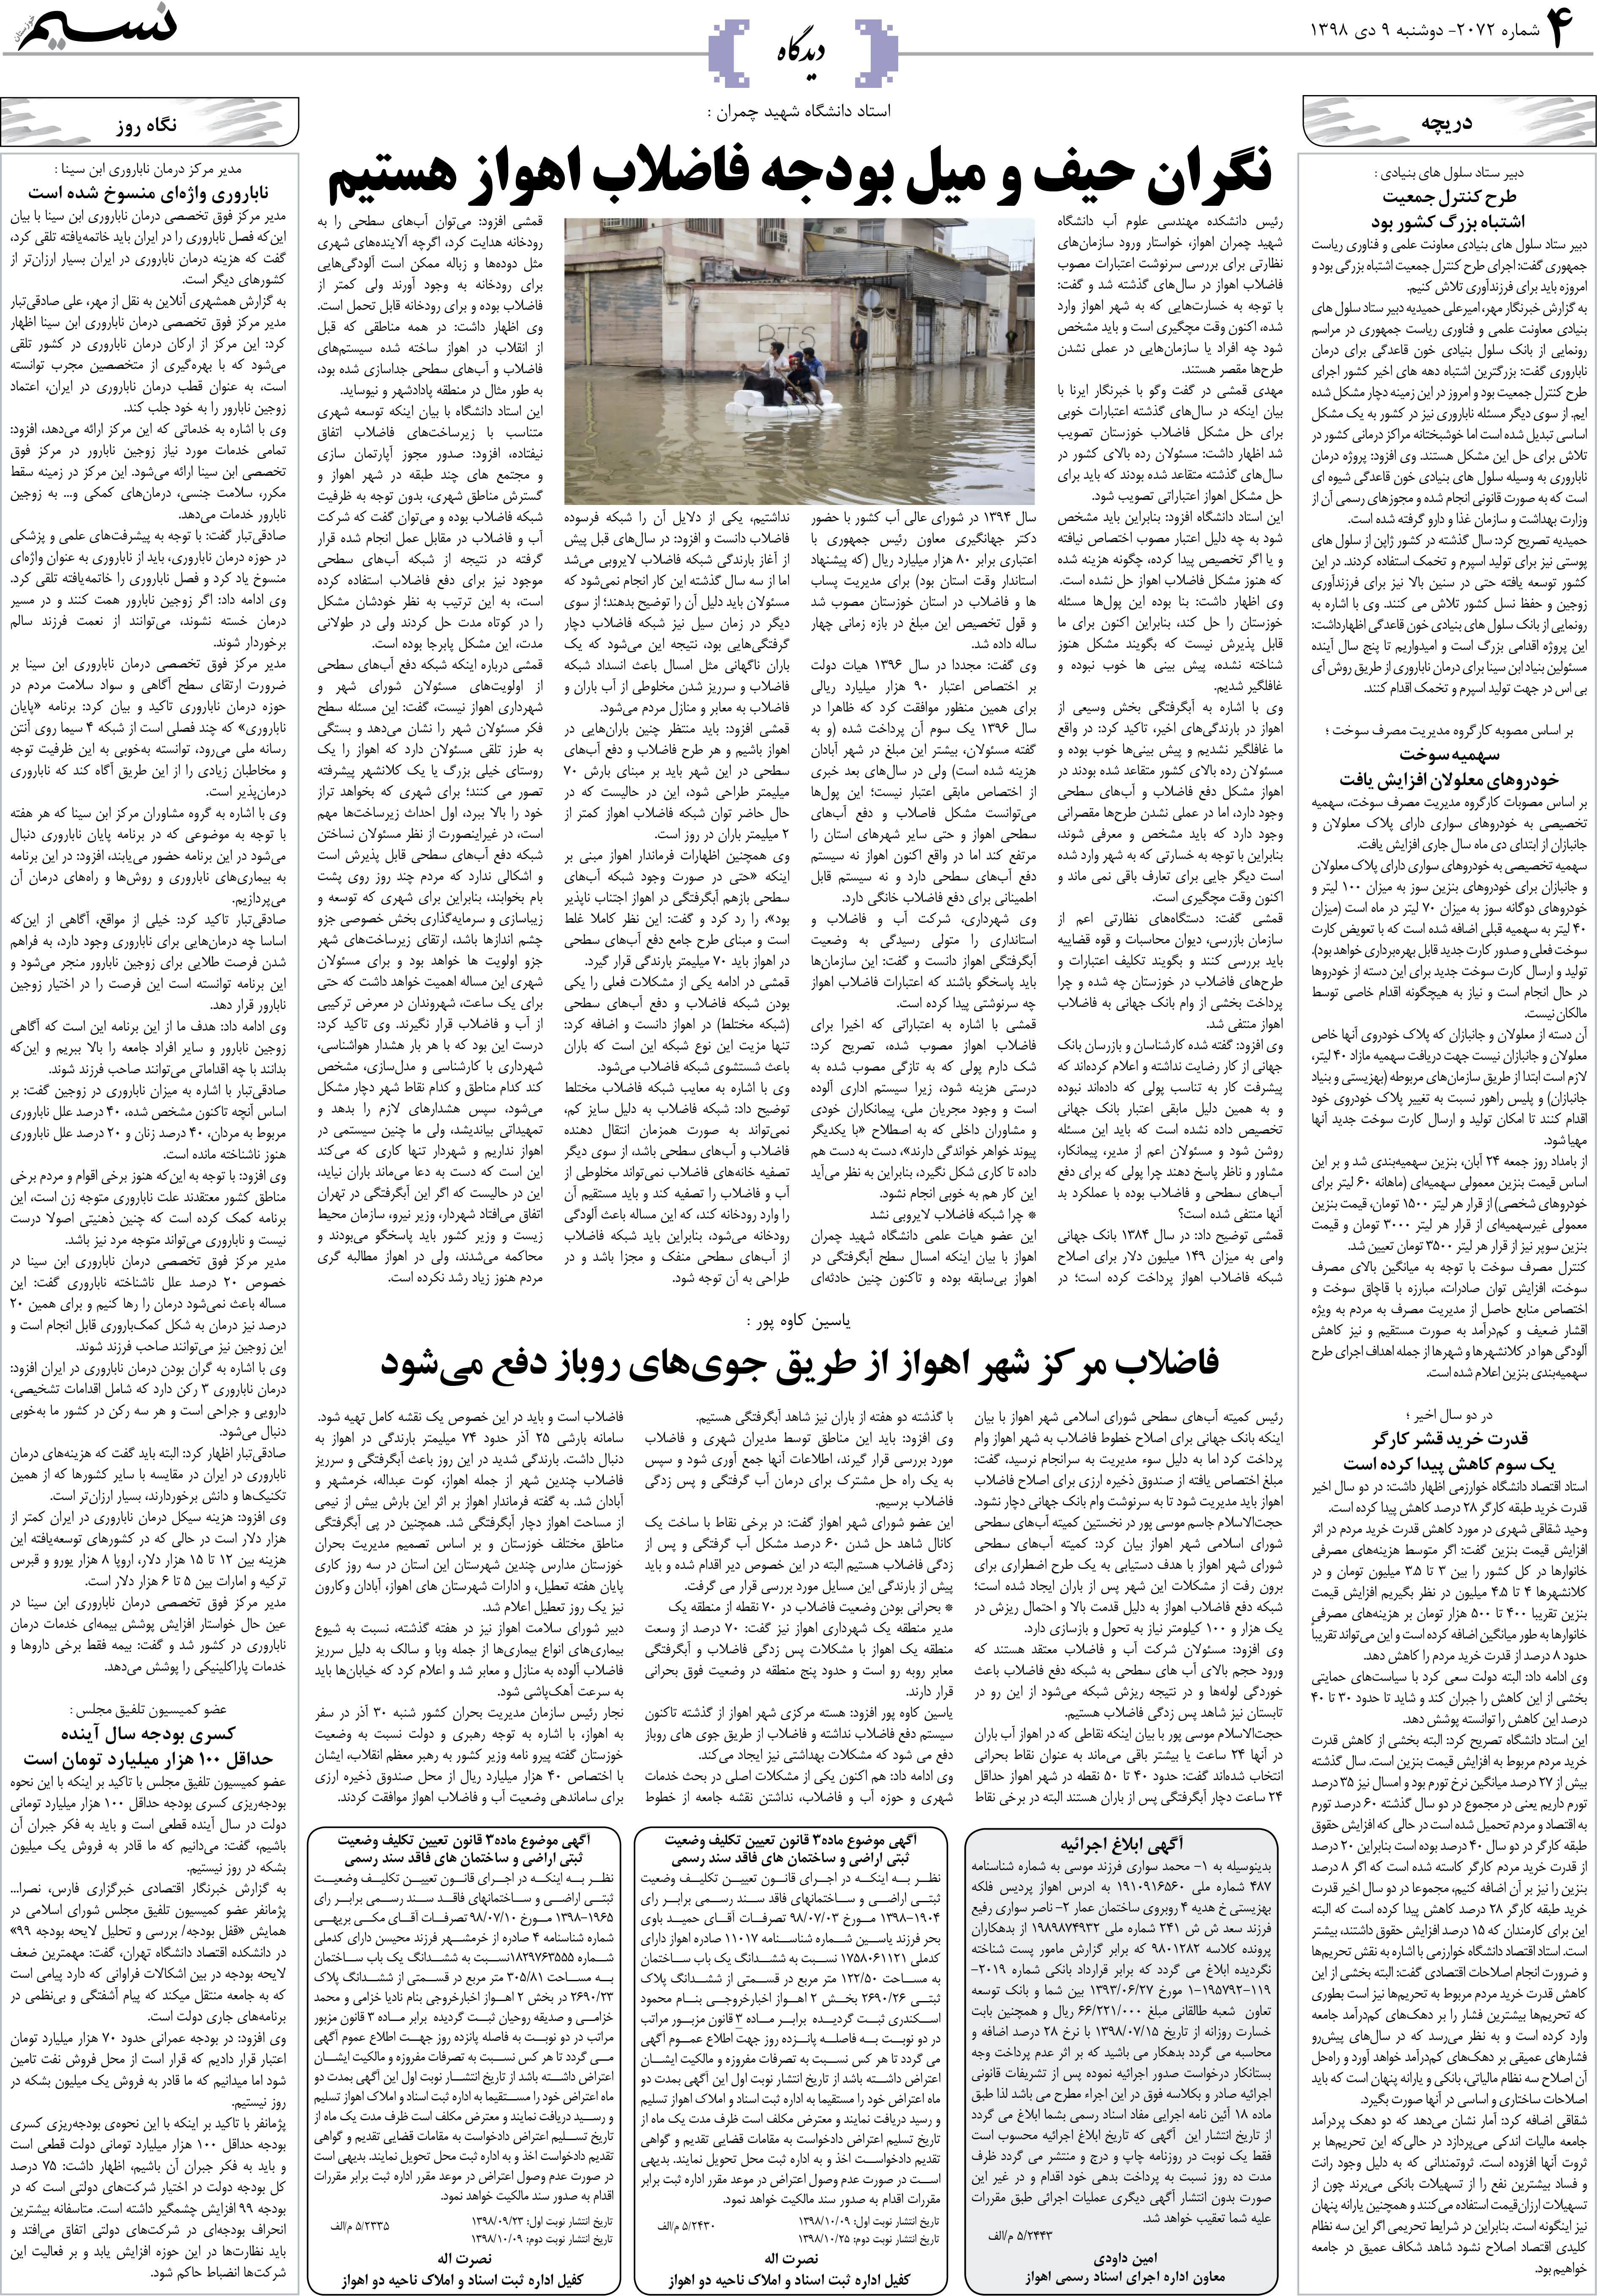 صفحه دیدگاه روزنامه نسیم شماره 2072